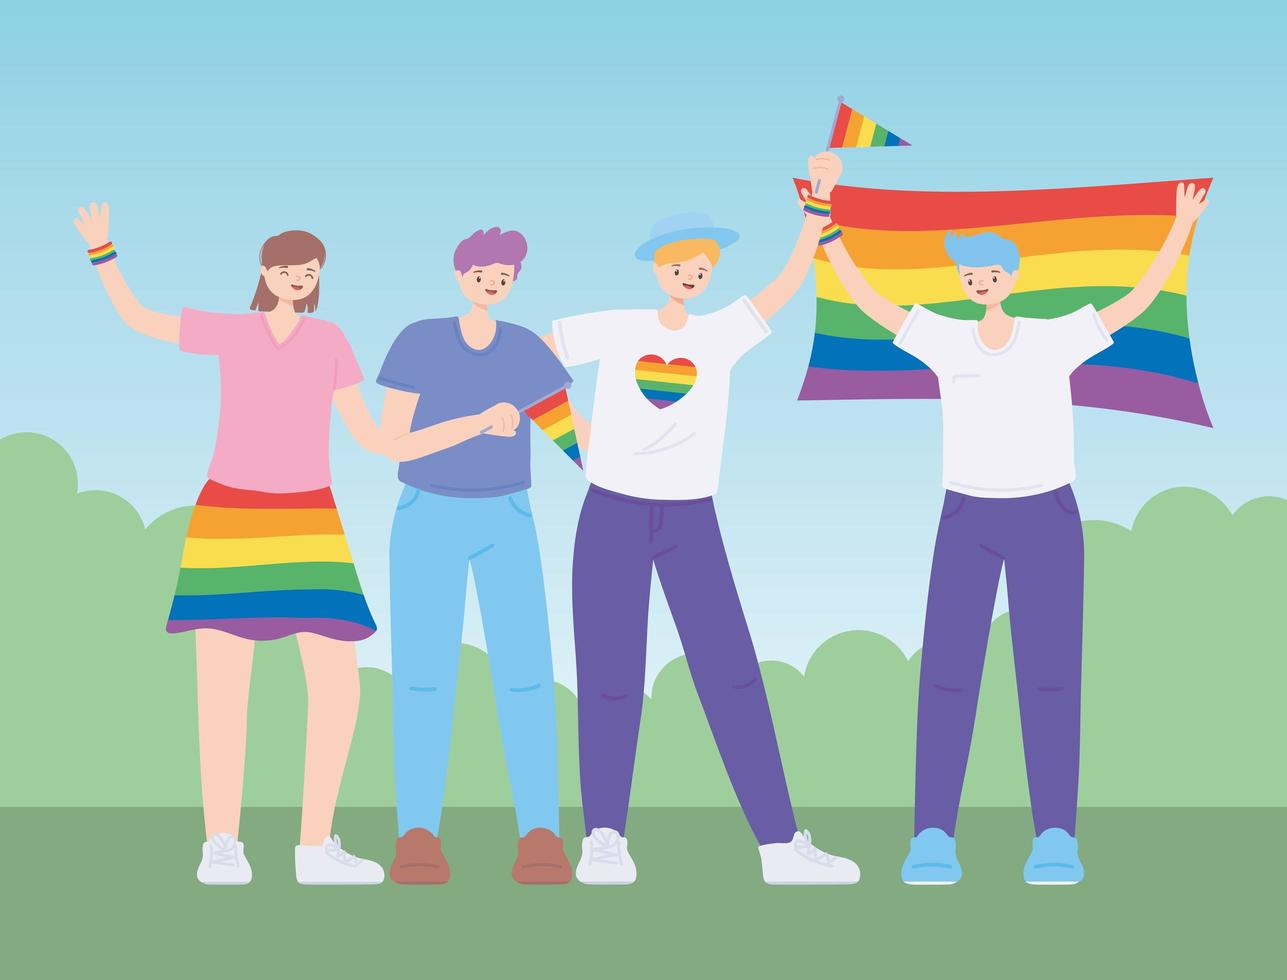 communauté lgbtq, gens étreignent tenant un drapeau arc-en-ciel, défilé gay de protestation contre la discrimination sexuelle vecteur